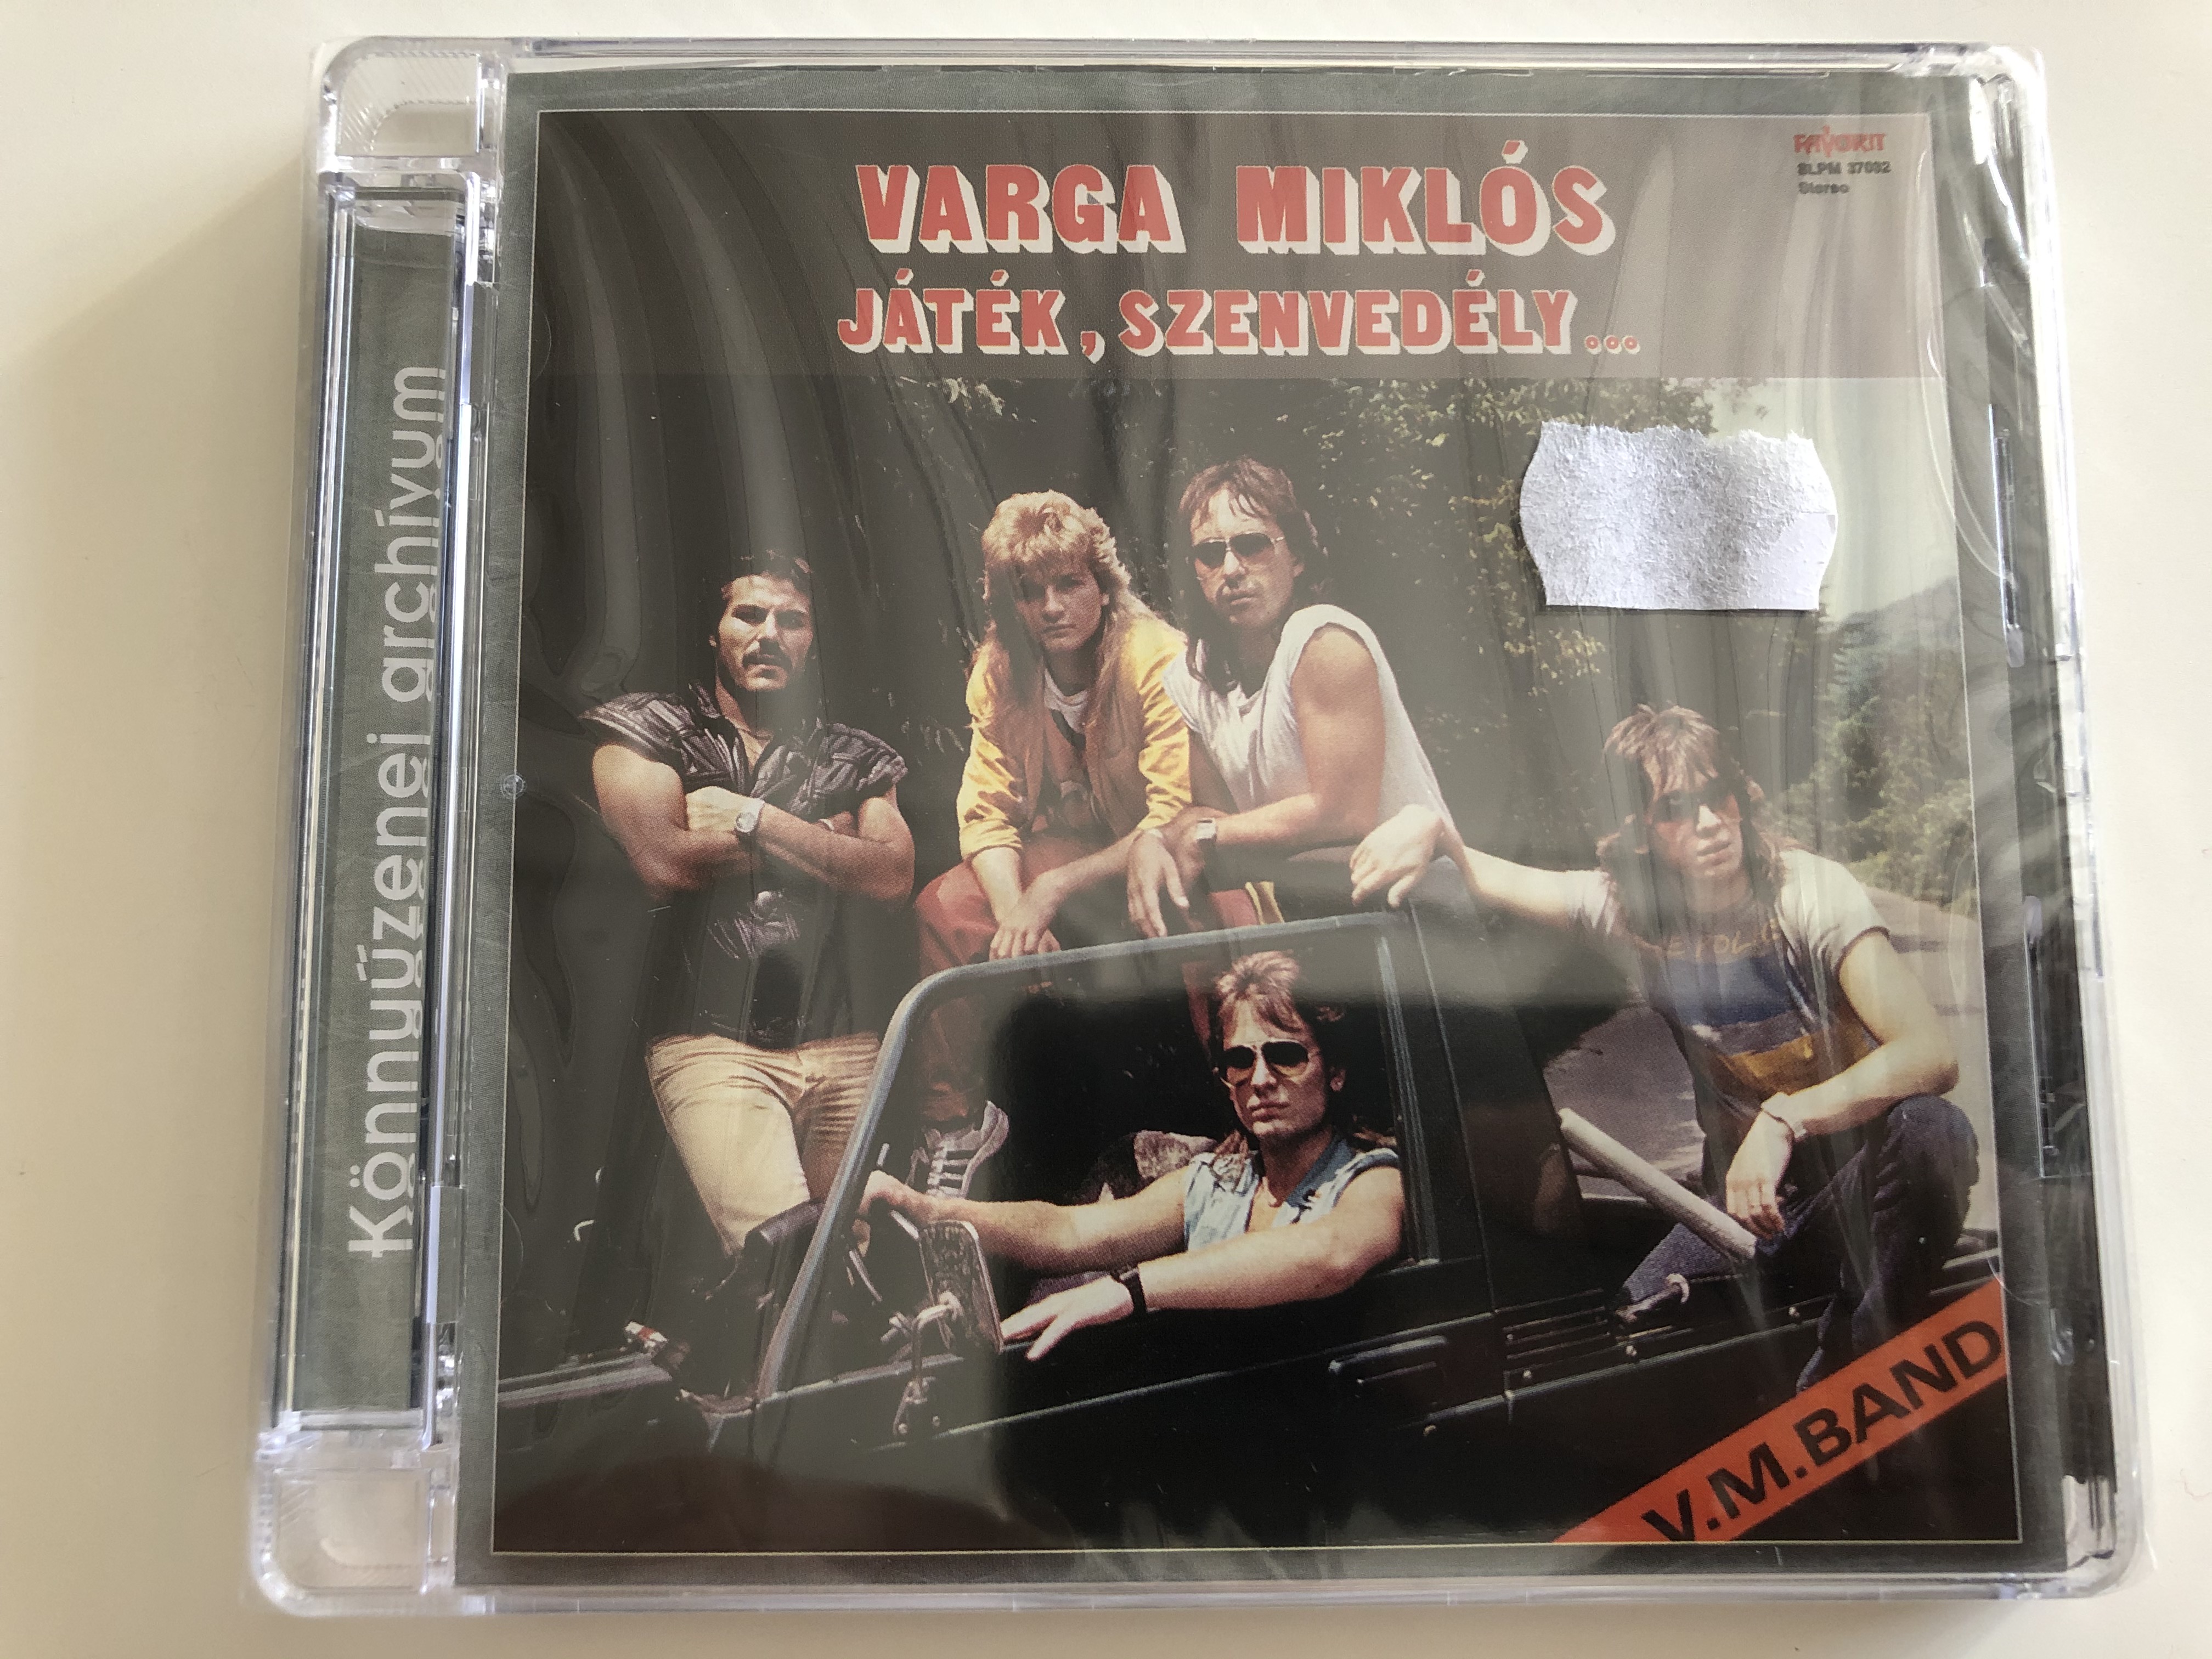 varga-mikl-s-j-t-k-szenved-ly...-v.-m.-band-alexandra-records-audio-cd-2009-pdkcd0066-1-.jpg